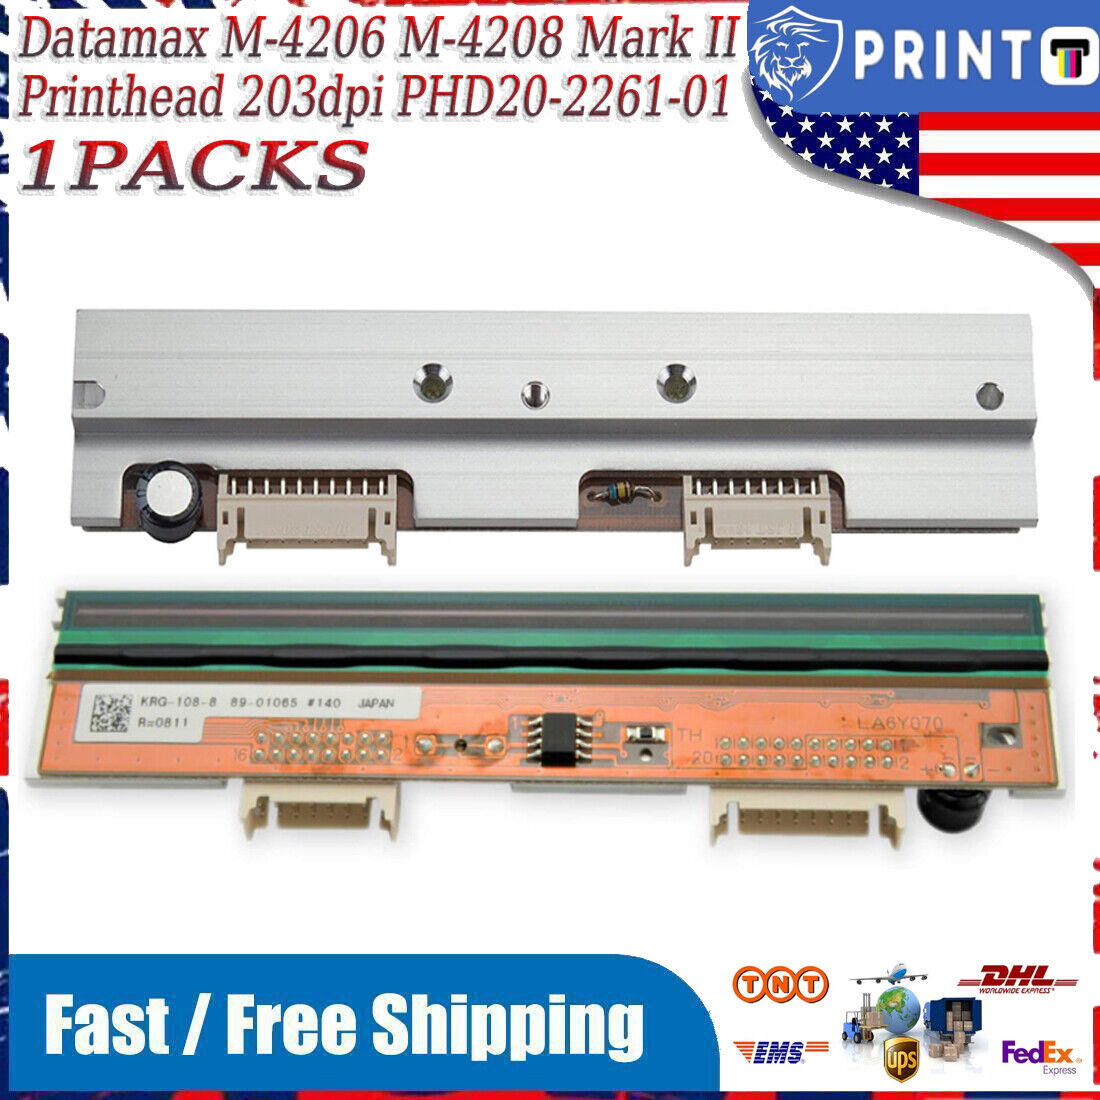 PHD20-2261-01 Printhead for Datamax M-4206 M-4208 Mark II Thermal Printer 203dpi